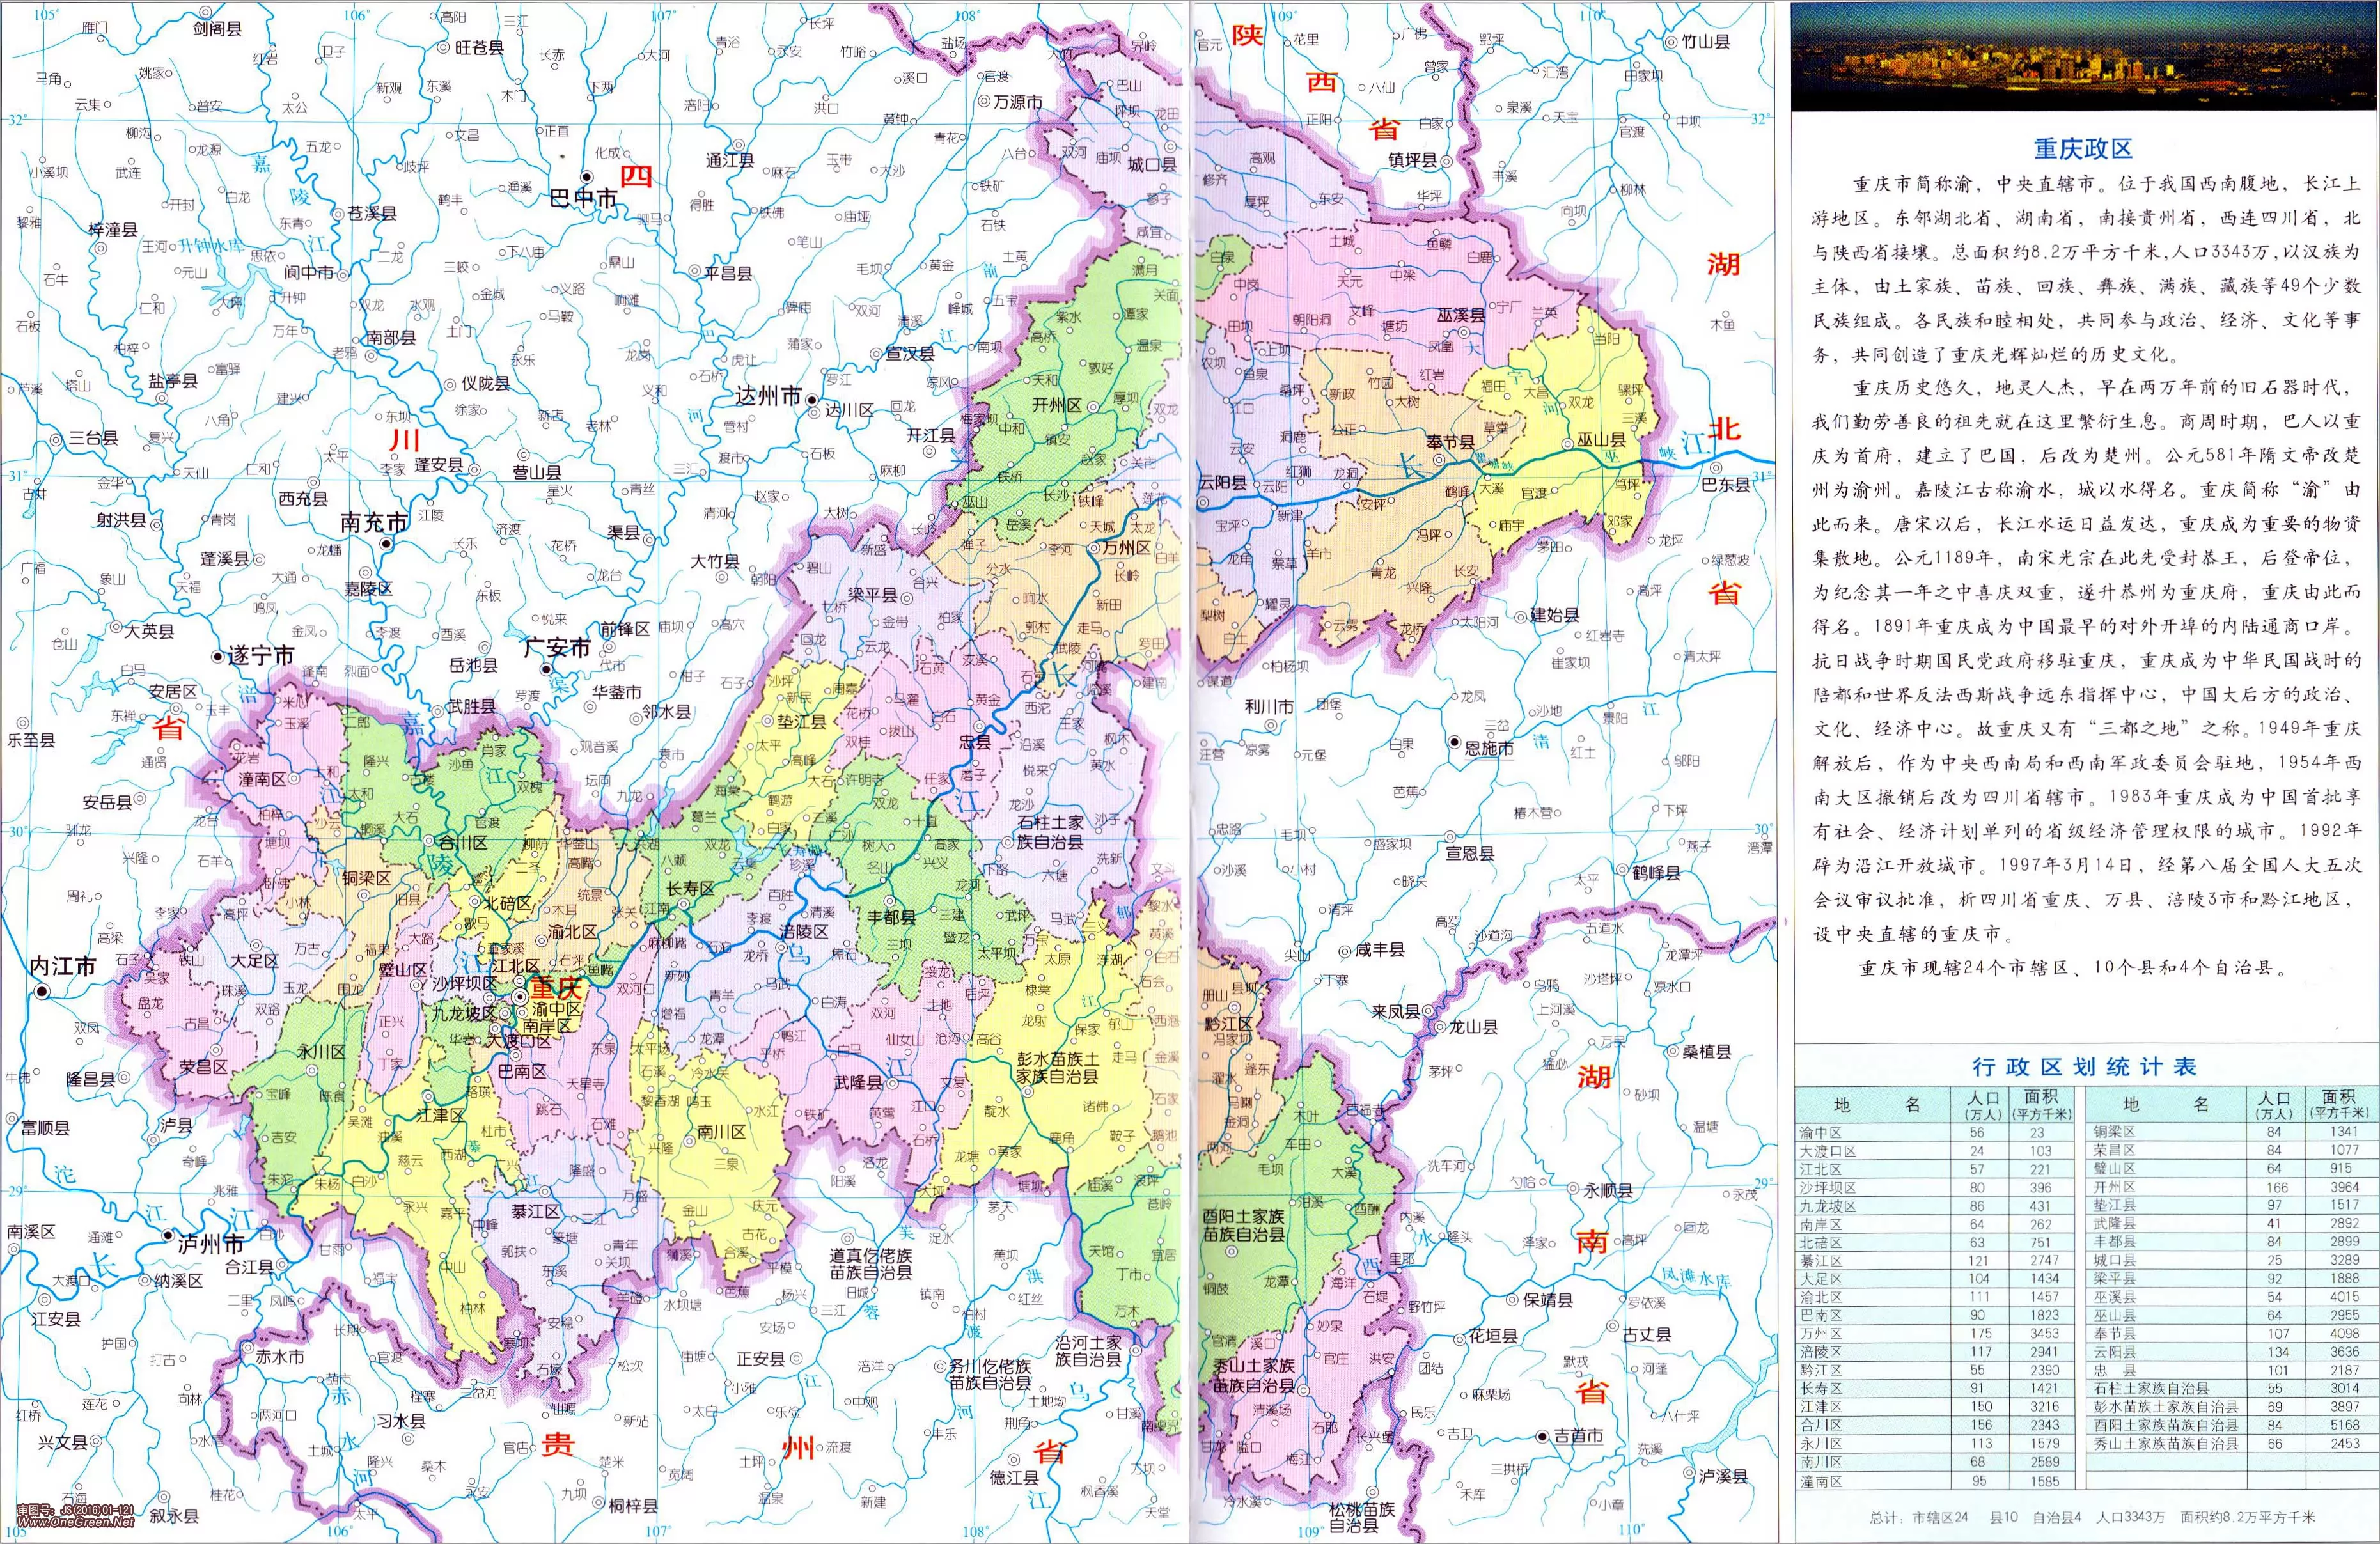 2021重庆地图全图高清- 重庆本地宝